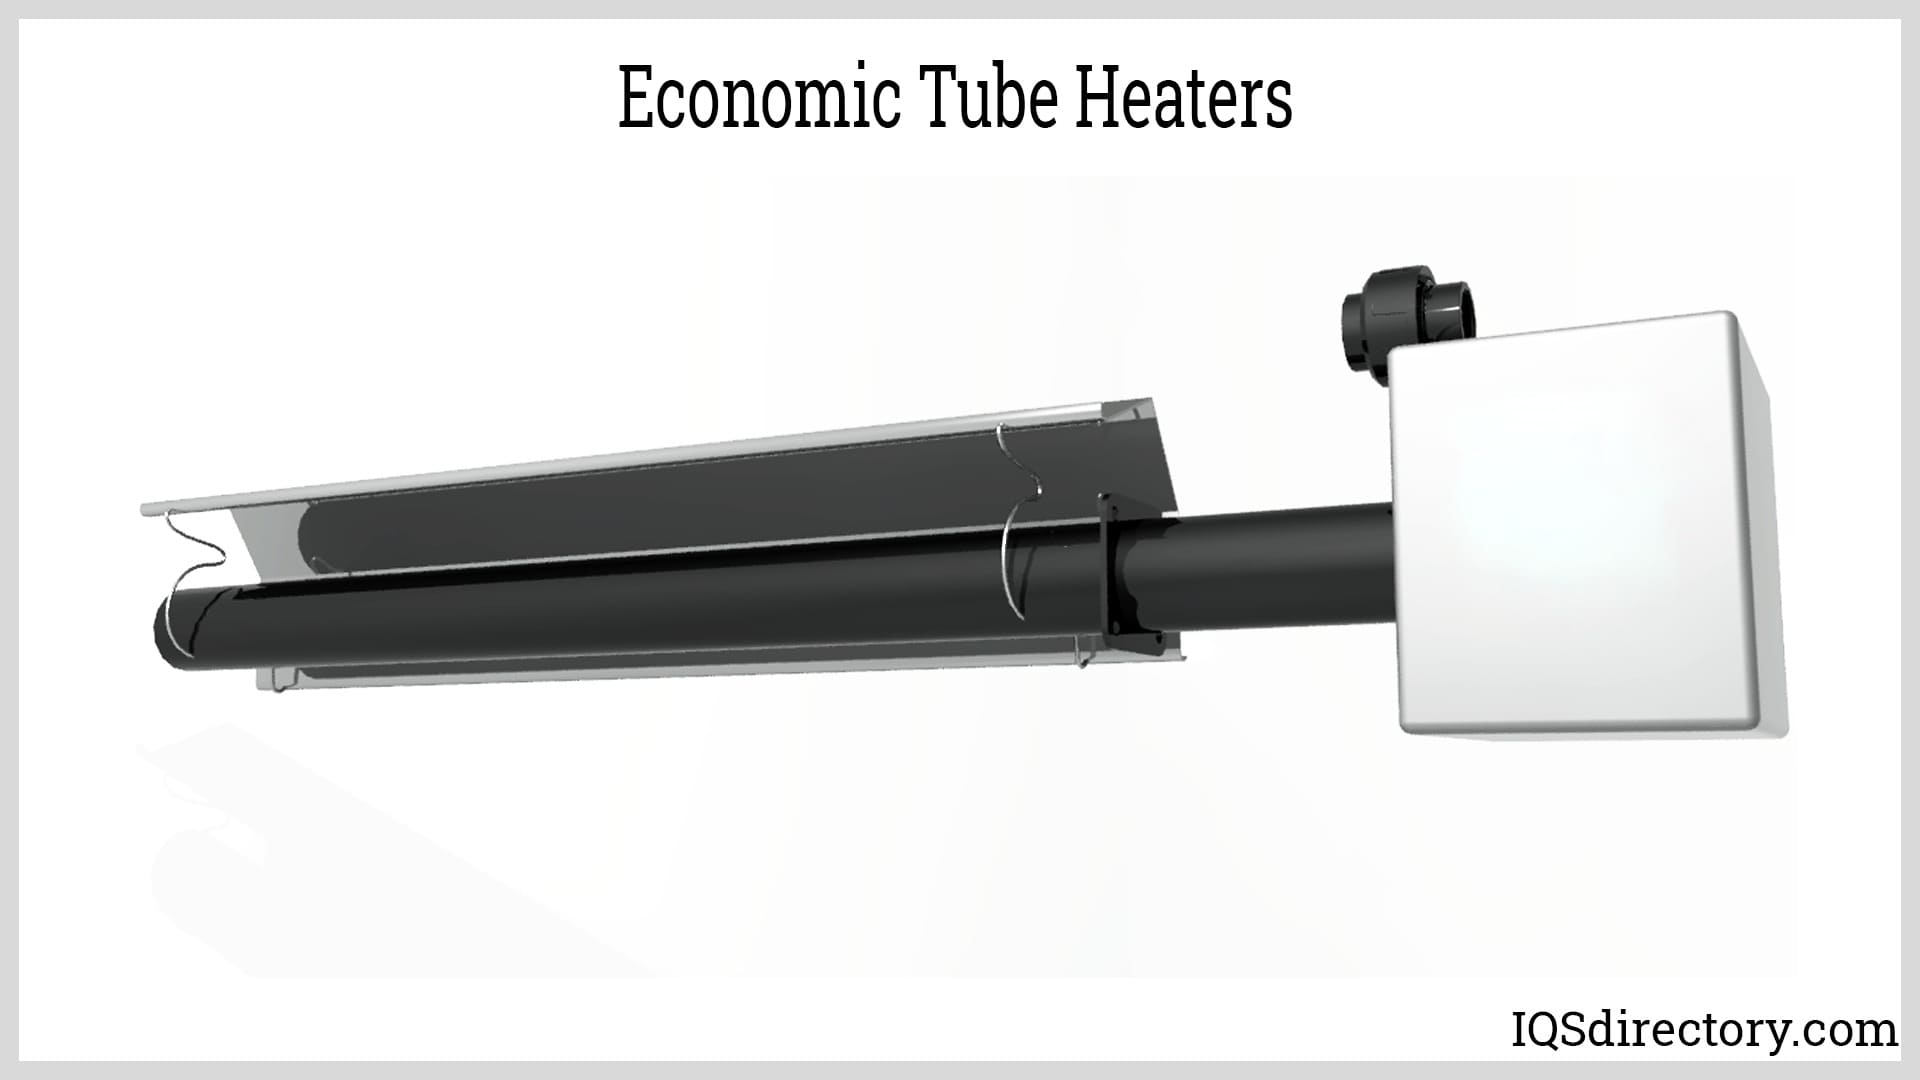 Economic Tube Heaters